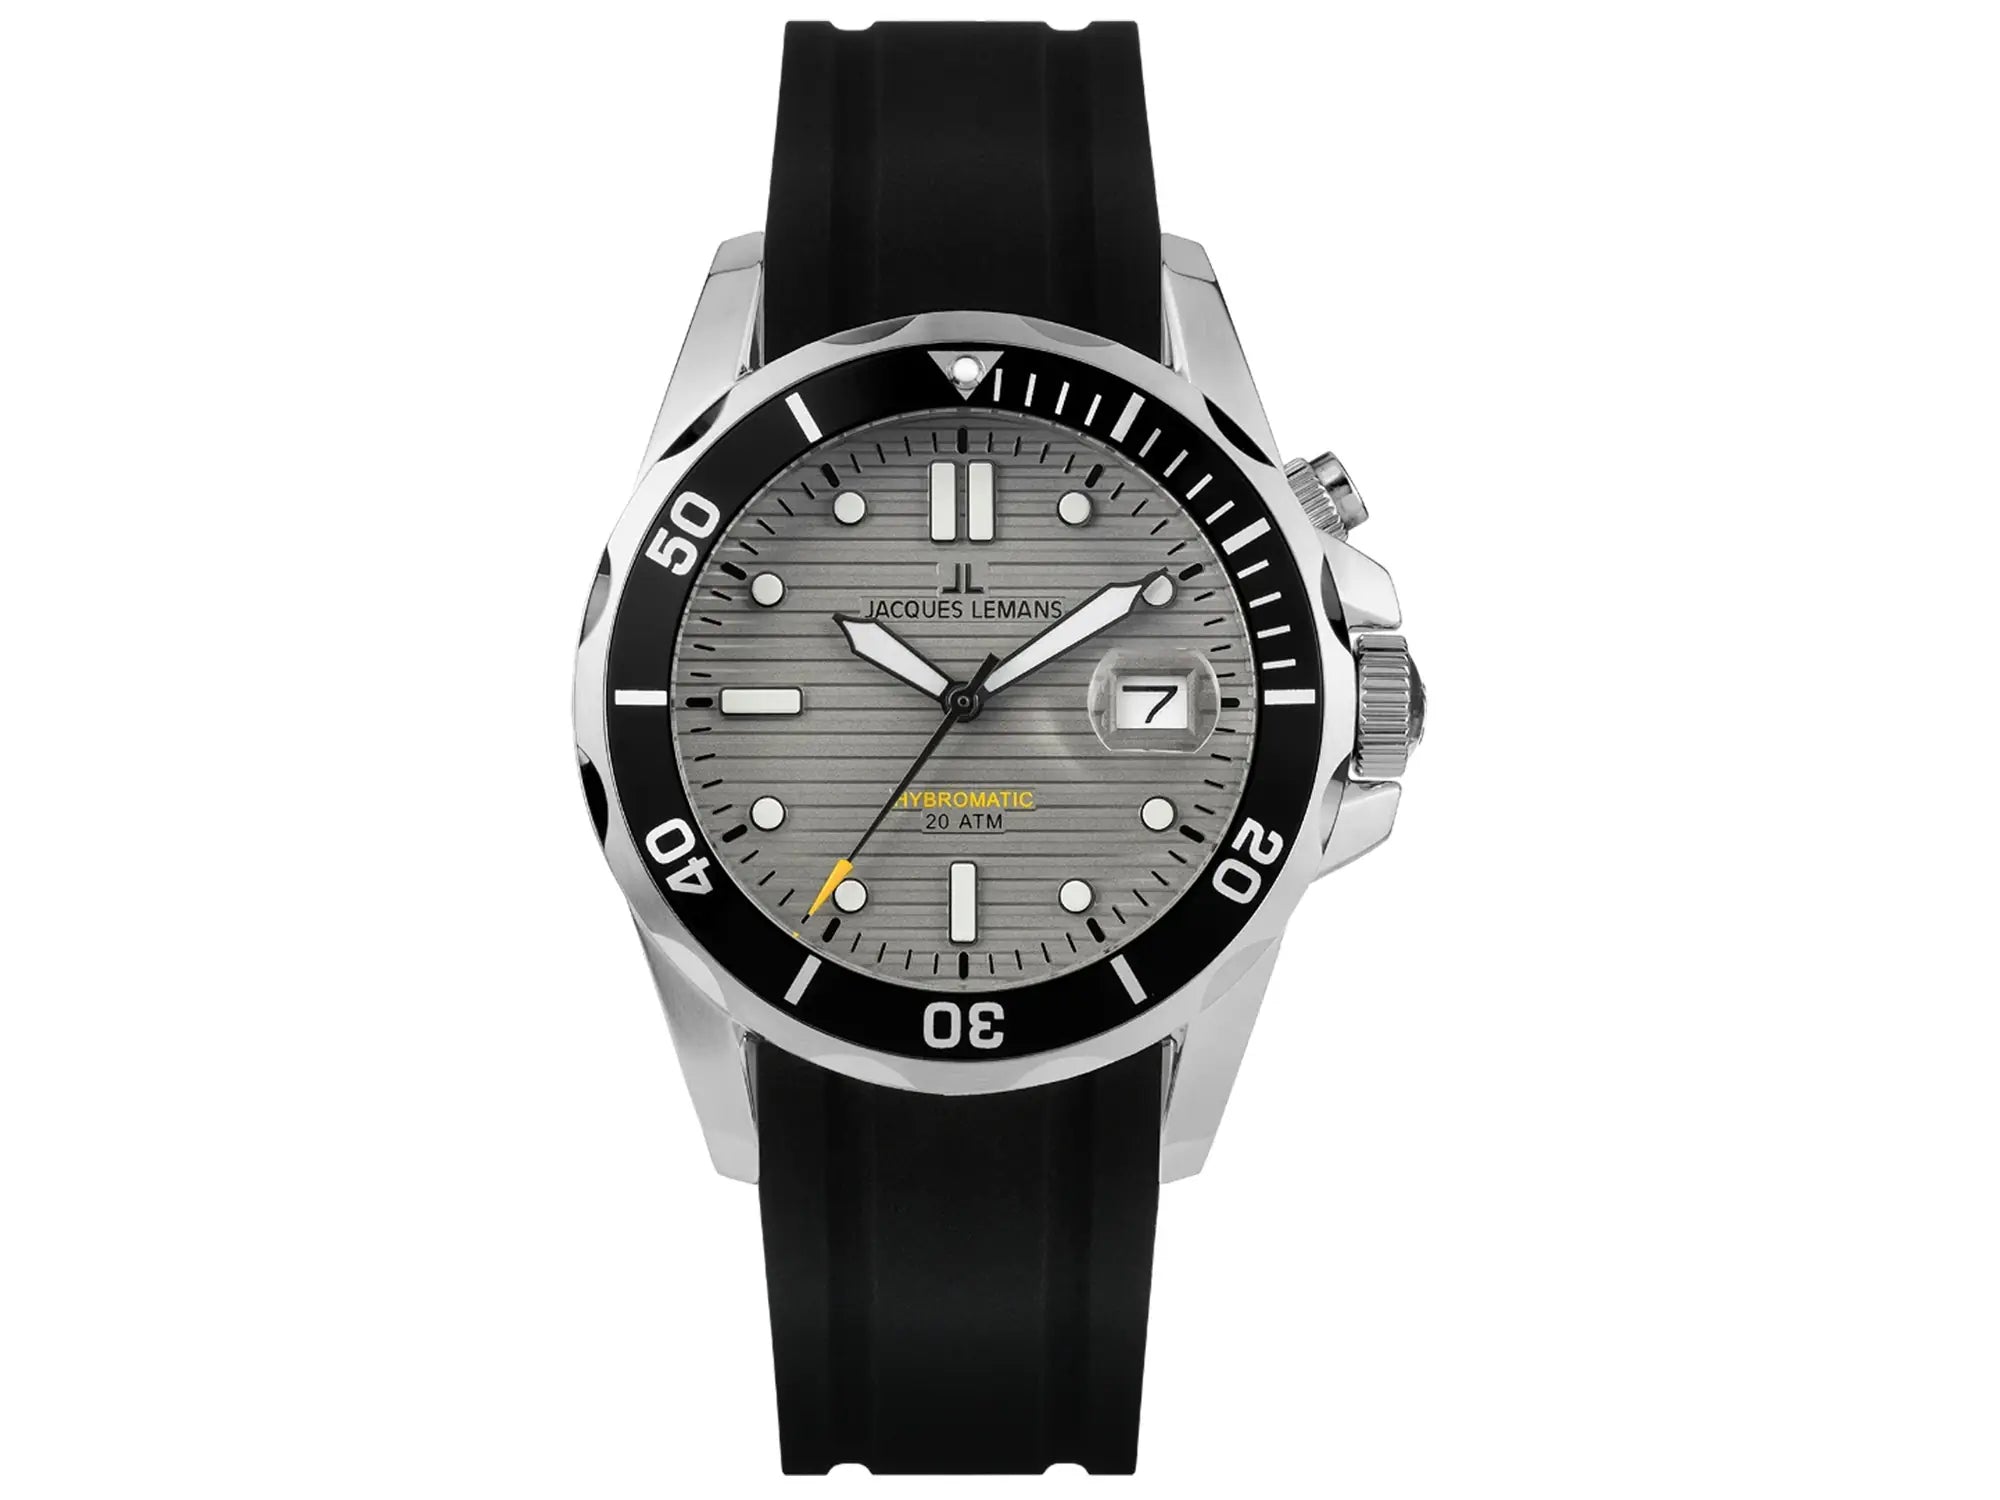 Frontale Ansicht der Jacques Lemans Uhr "Hybromatic" mit grauem Zifferblatt und schwarzen Kautschuk-Band